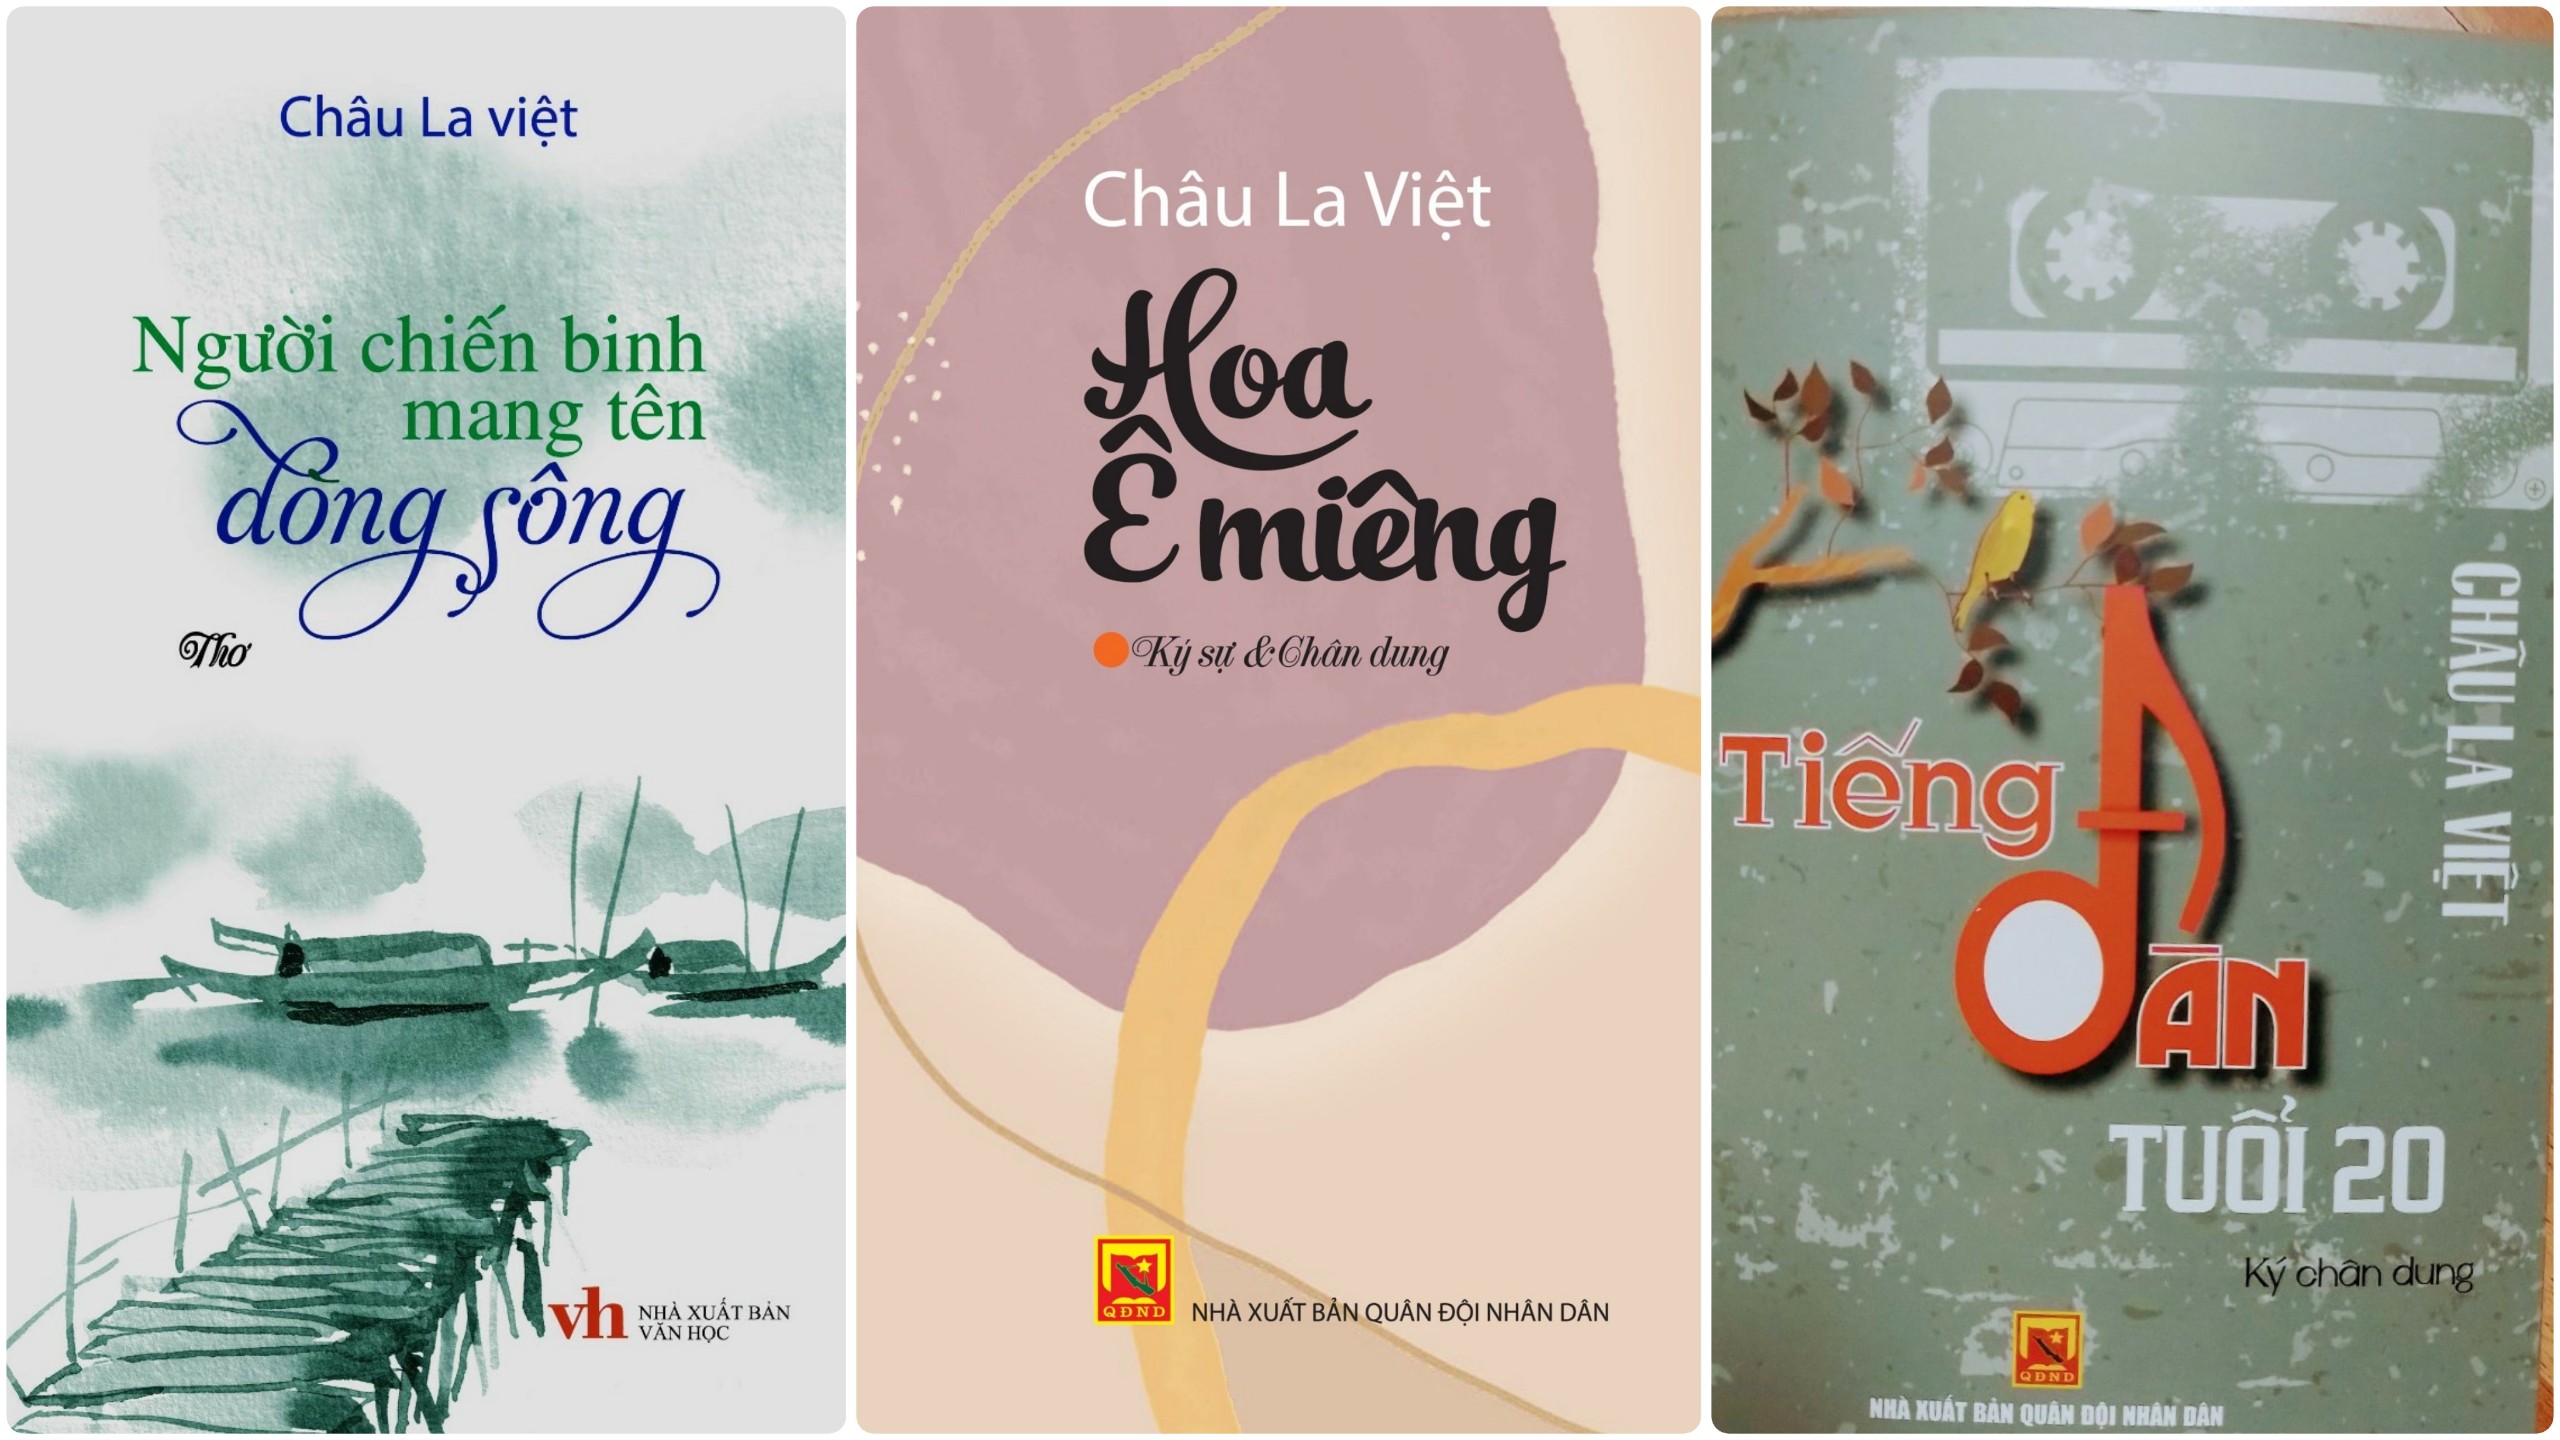 Nhà văn Châu La Việt: Mọi trang viết của tôi đều bắt đầu từ ánh sáng của trái tim mẹ - 1